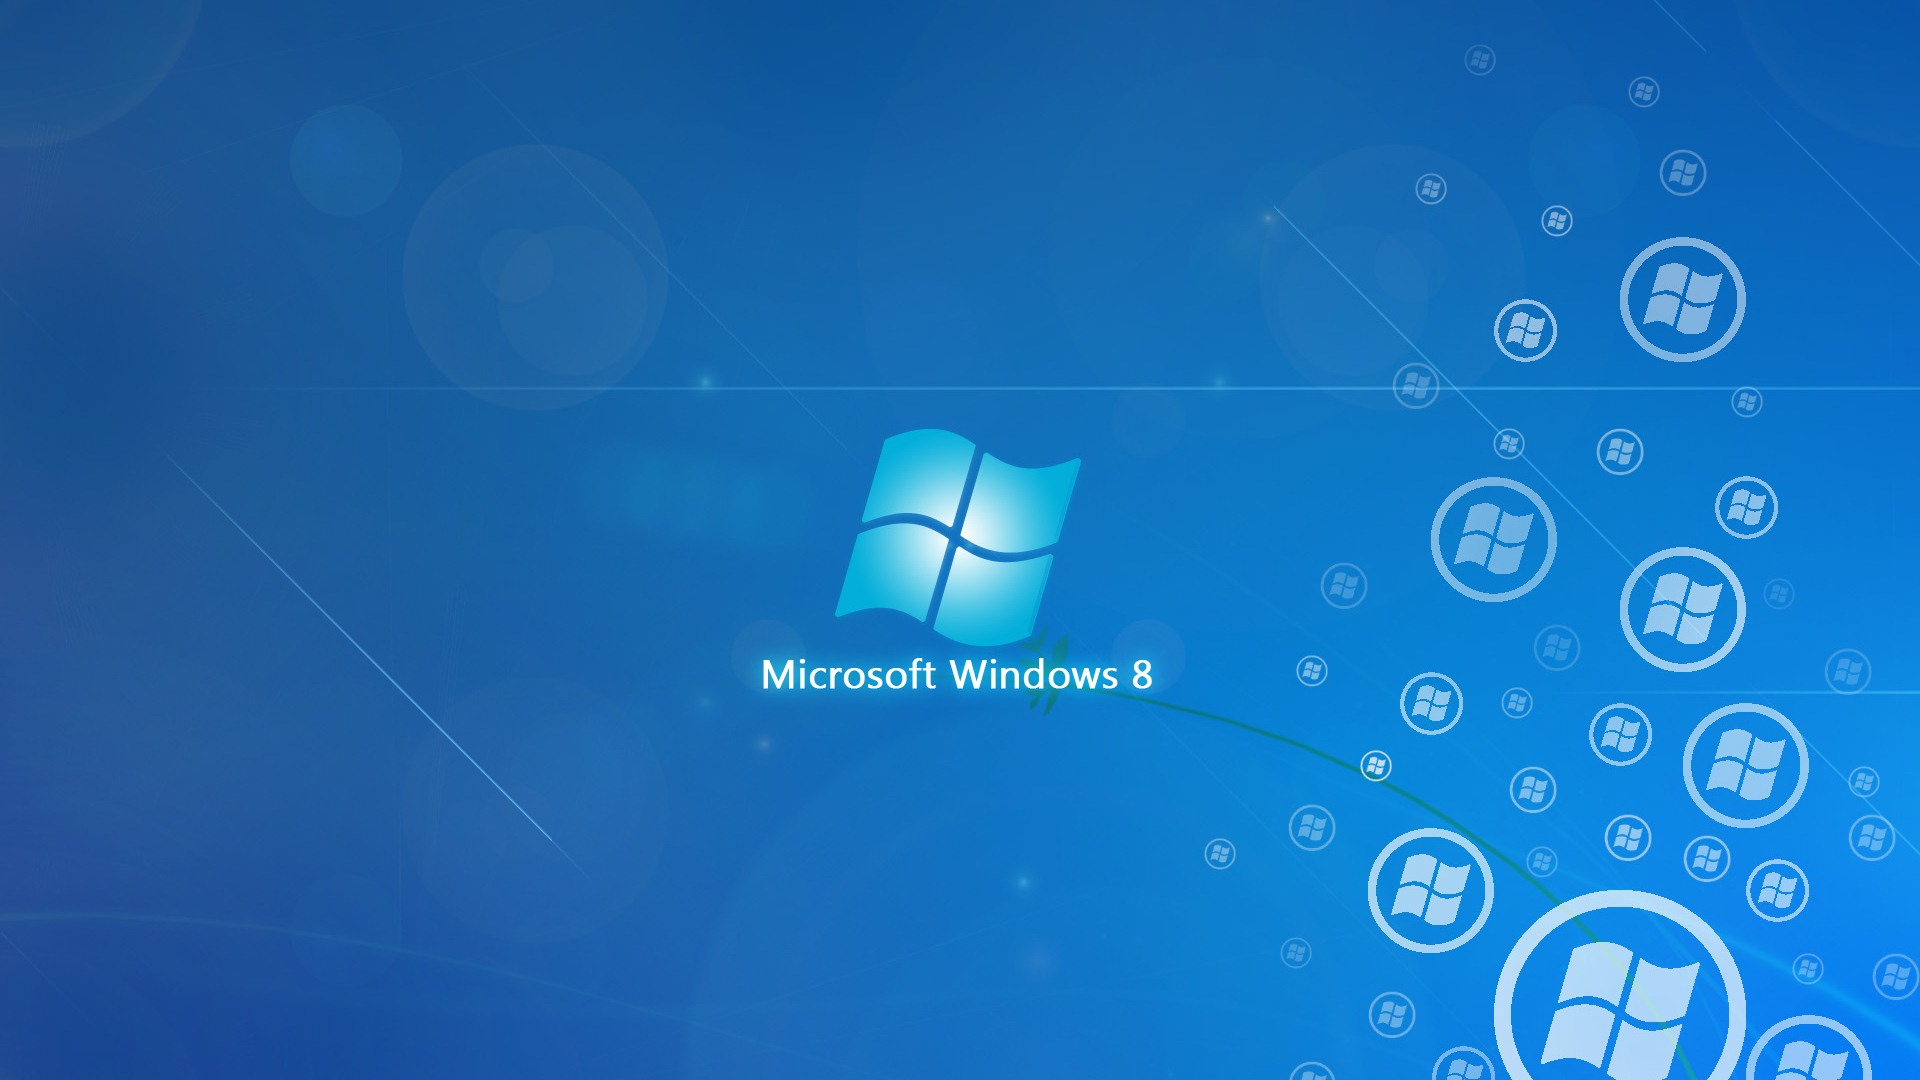 Windows 8 theme wallpaper 2 - 1920x1080 Wallpaper Download